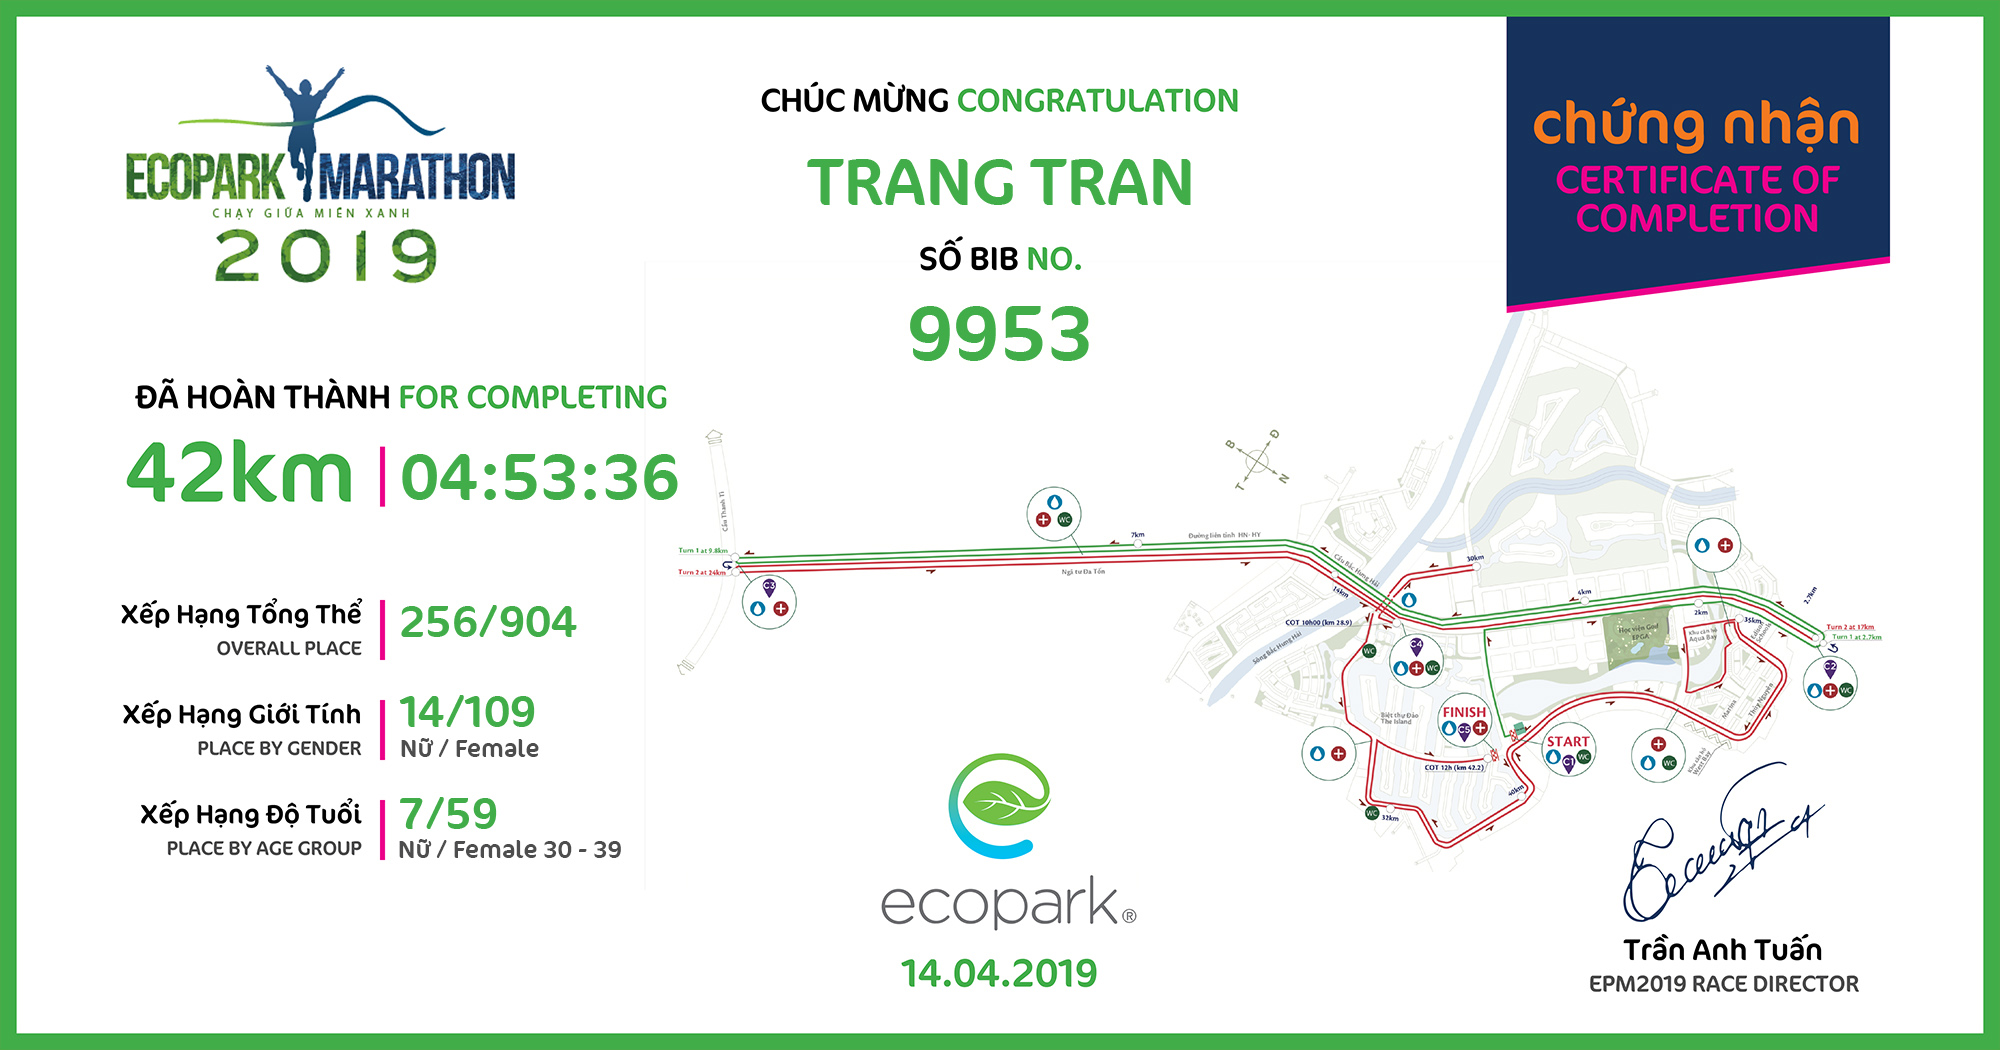 9953 - Trang Tran